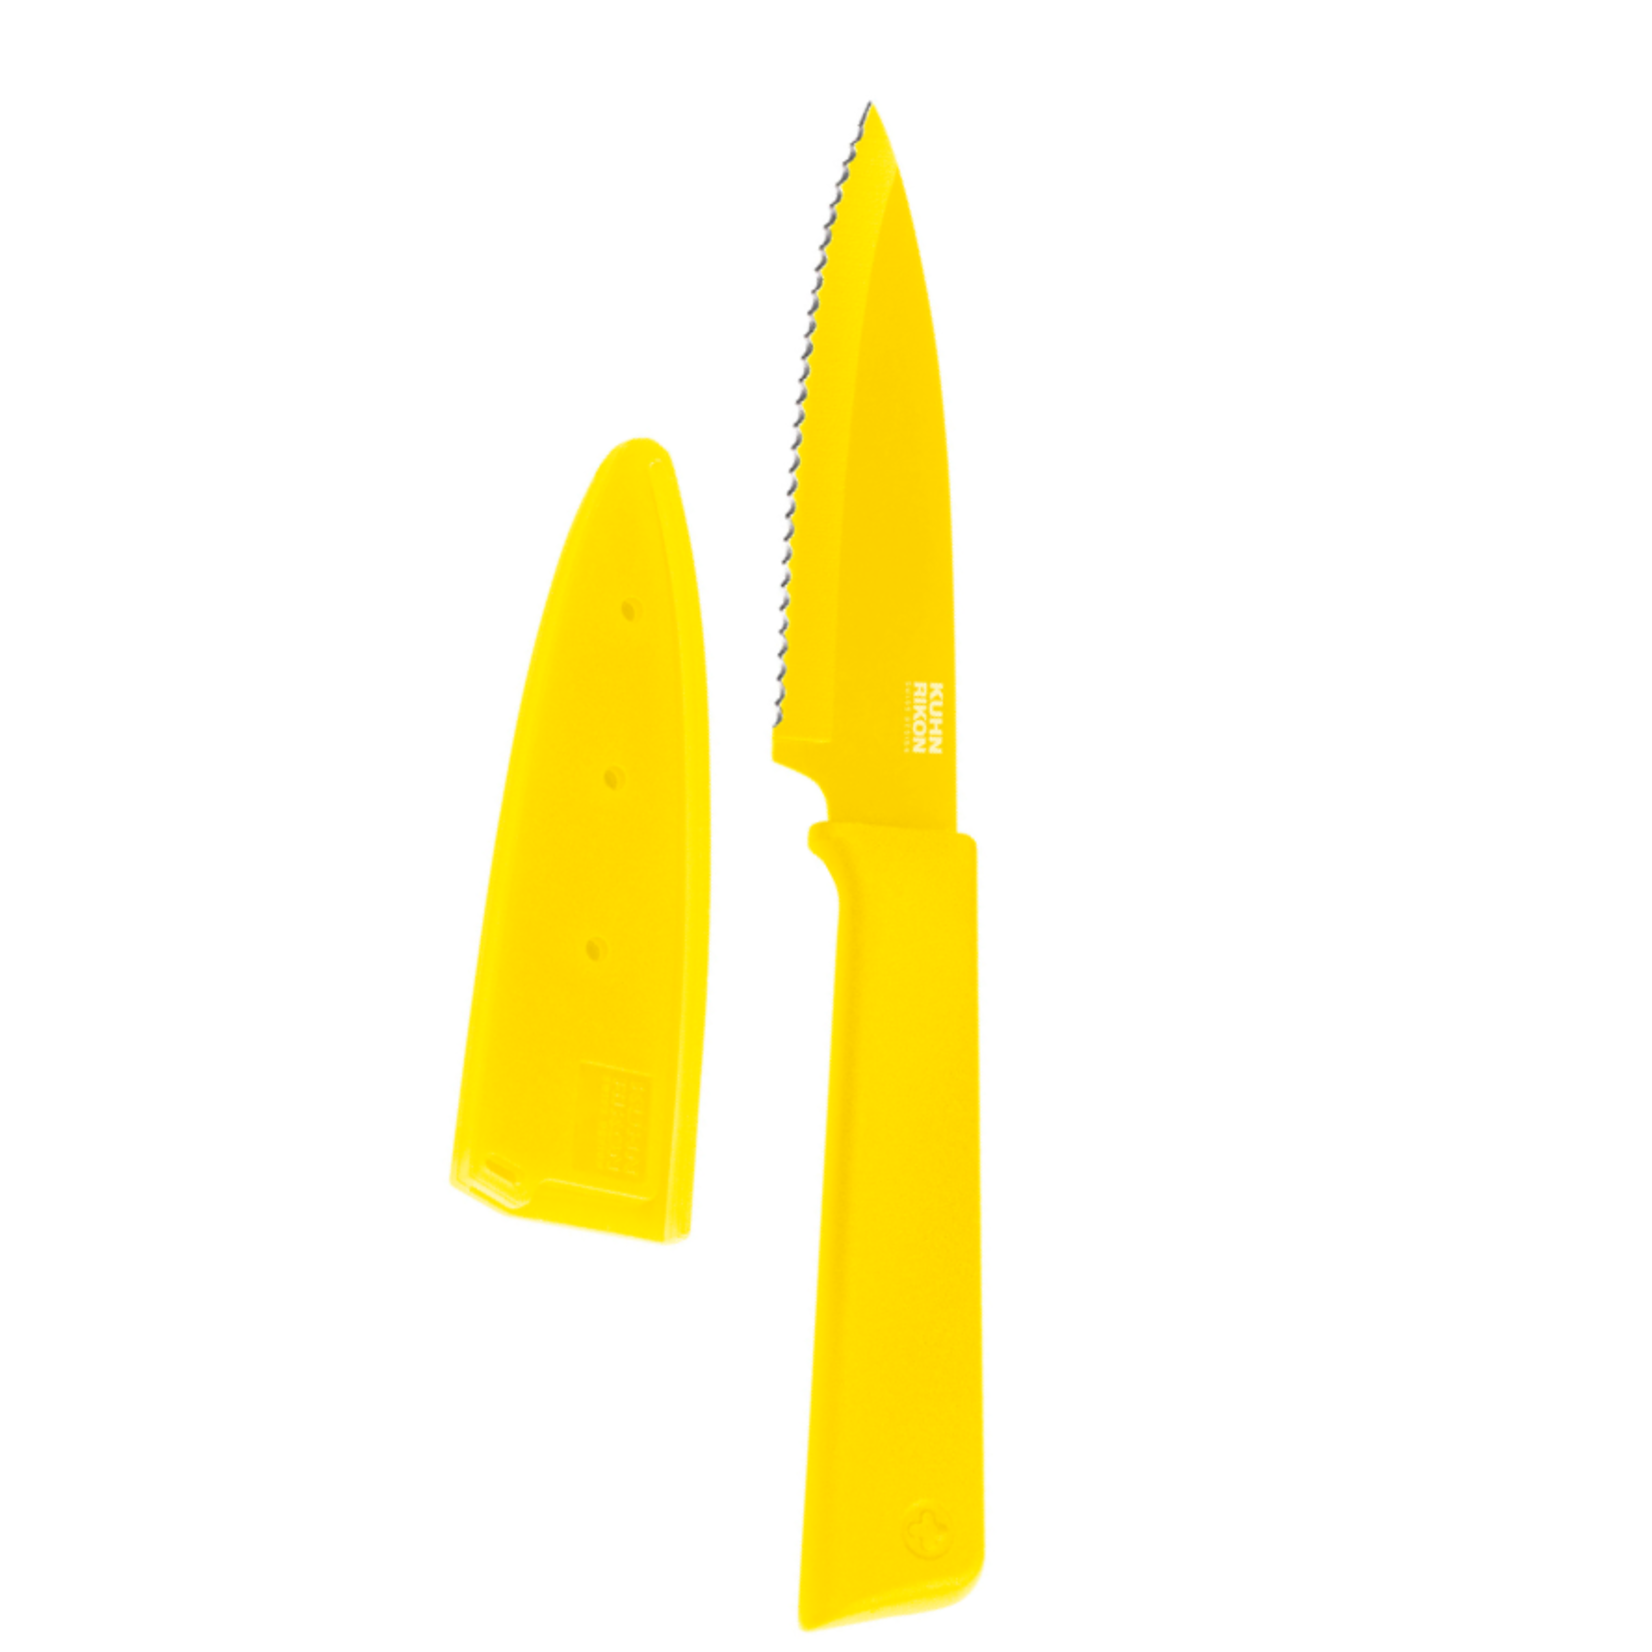 Kuhn Rikon Colori Paring Knife, Serrated